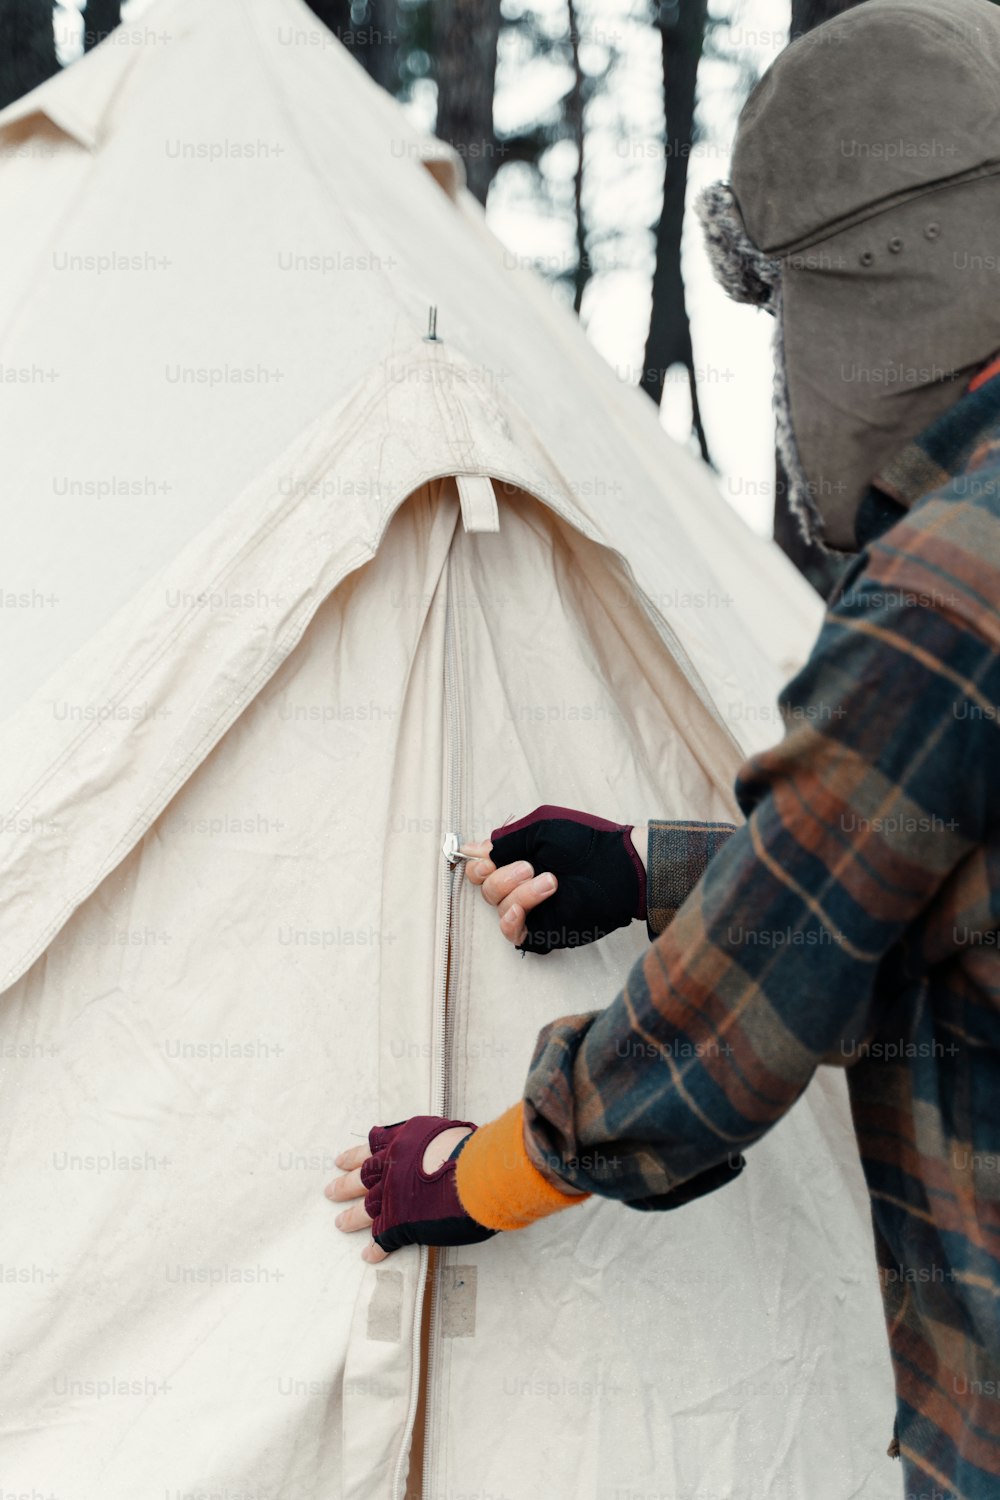 uma pessoa usando luvas colocando algo em uma tenda